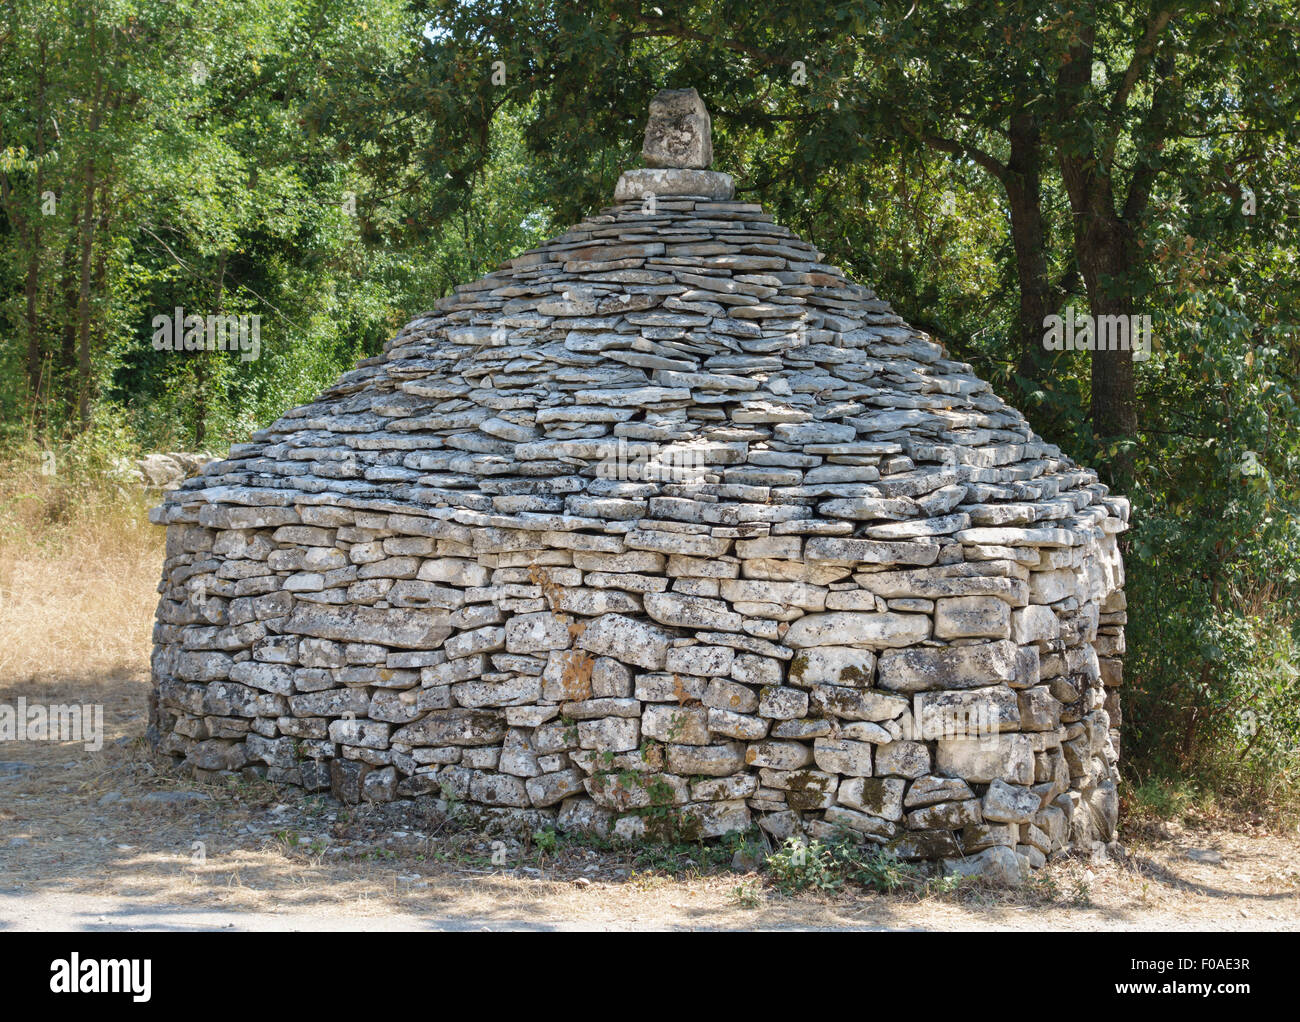 Istria, Croacia. Un kazun (kažun), un tradicional de piedra circulares de piedra seca edificio utilizado como refugio de pastor. Foto de stock